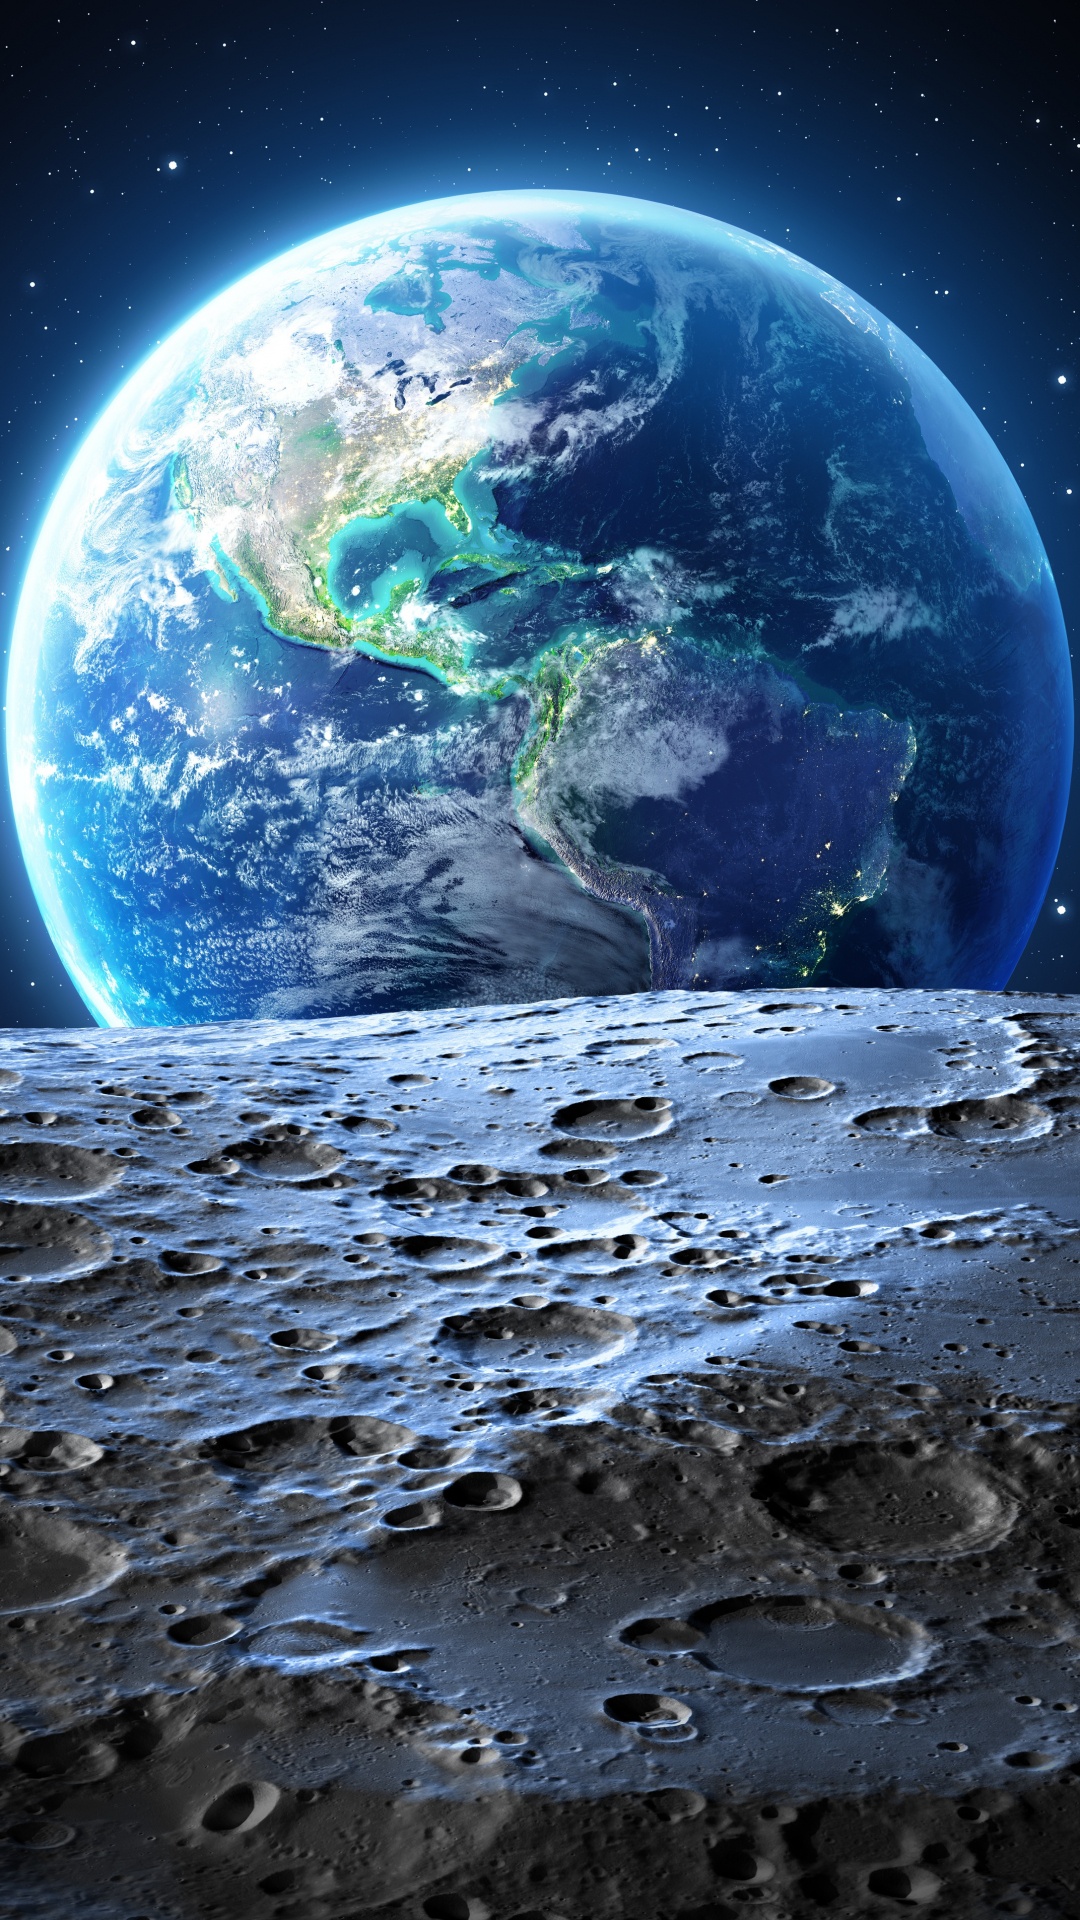 月亮, 美国, 这个星球, 外层空间, 天文学对象 壁纸 1080x1920 允许